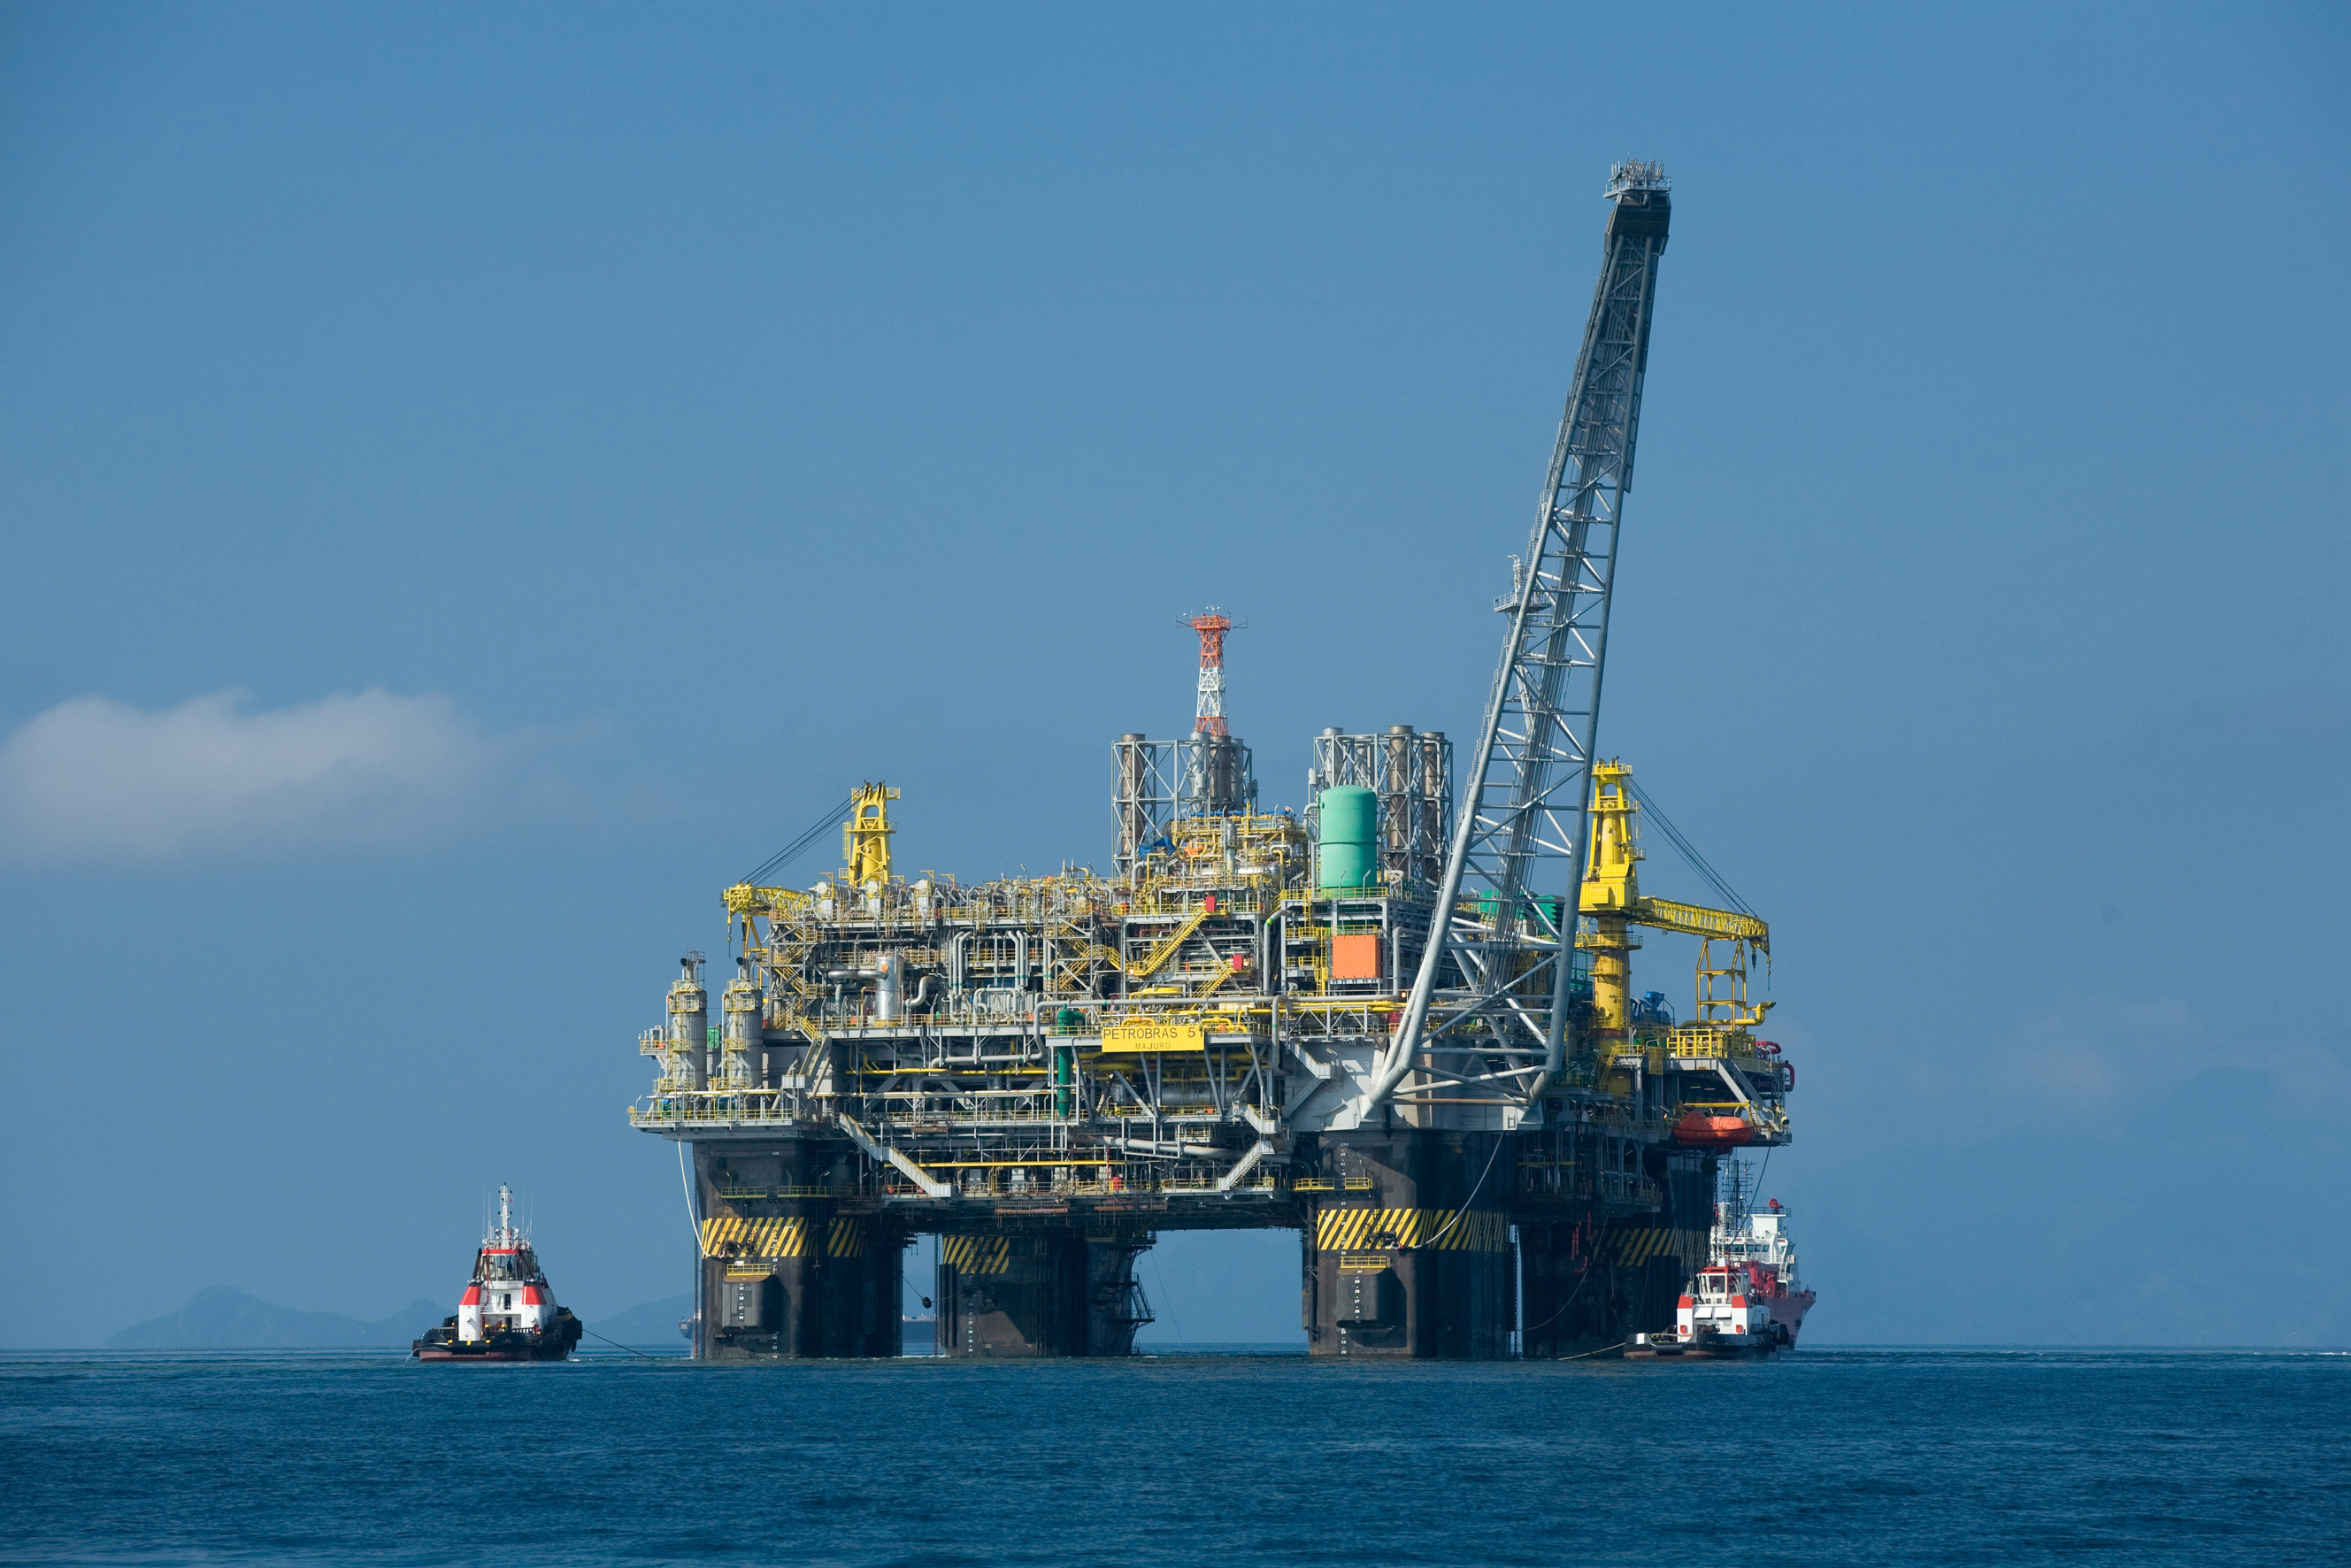 Oil platform - Wikipedia